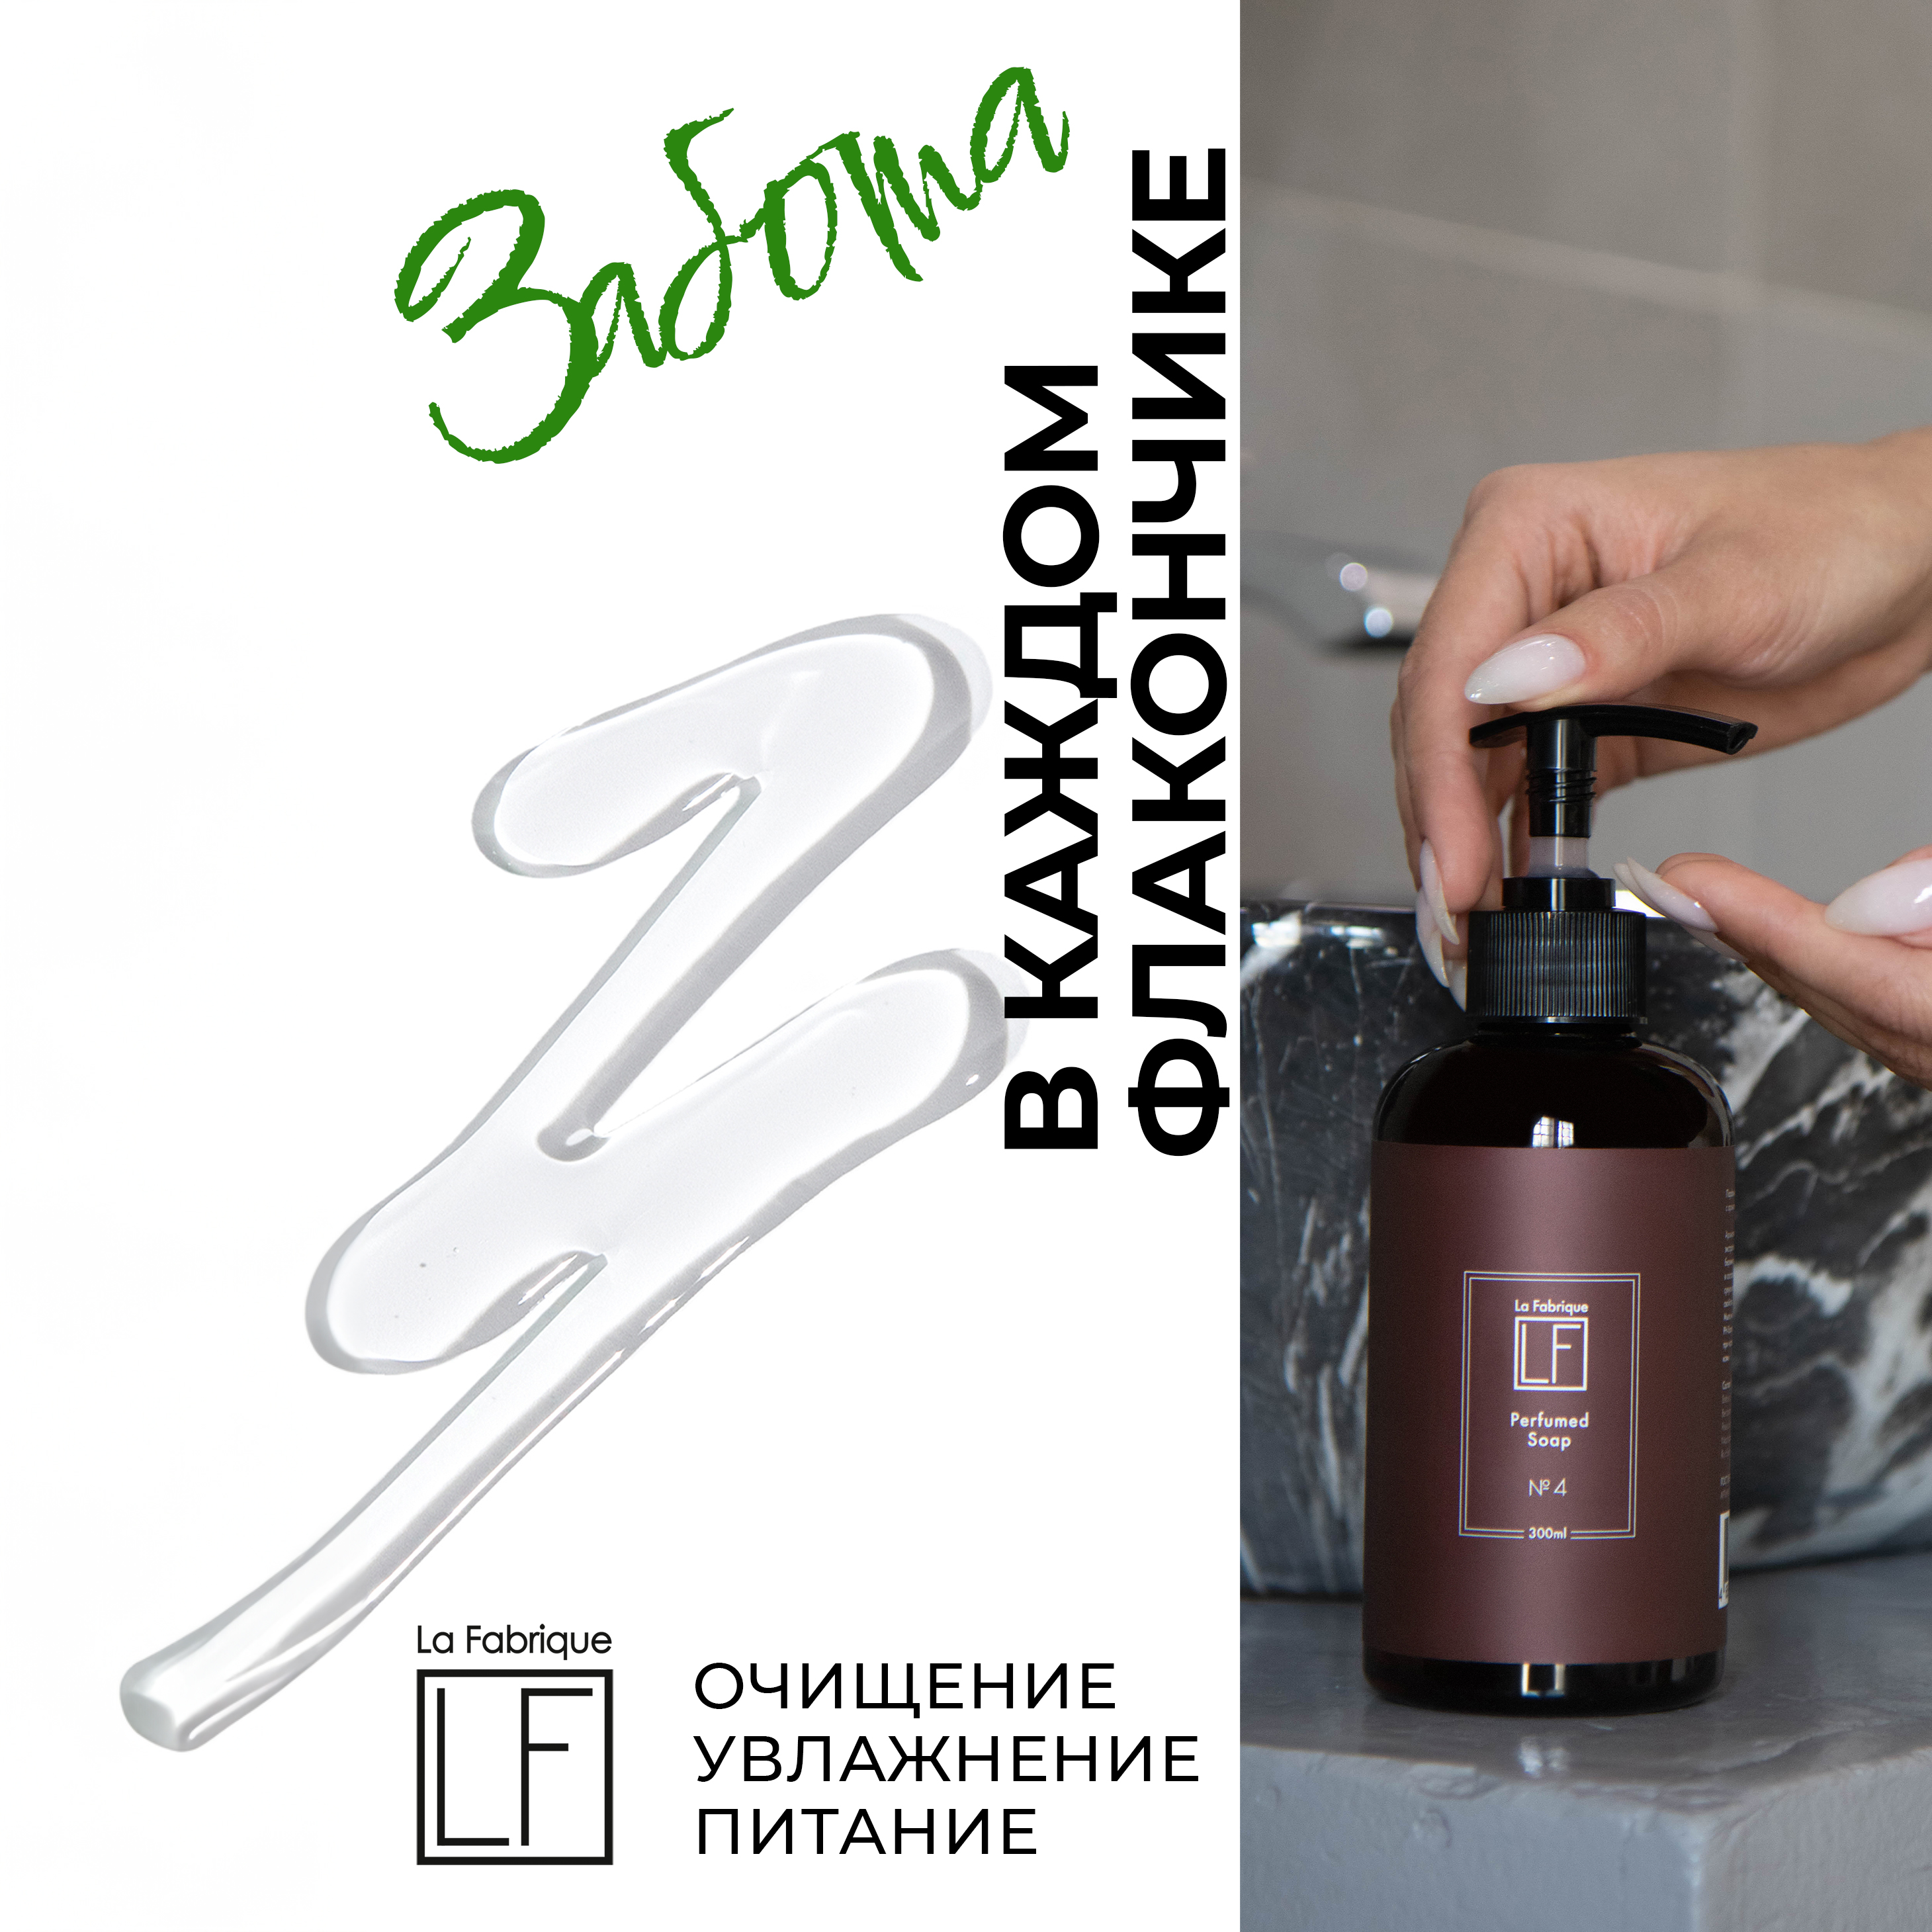 Жидкое мыло La Fabrique парфюмированное с ароматами туберозы и уд с неролью 300 мл * 2 шт - фото 3